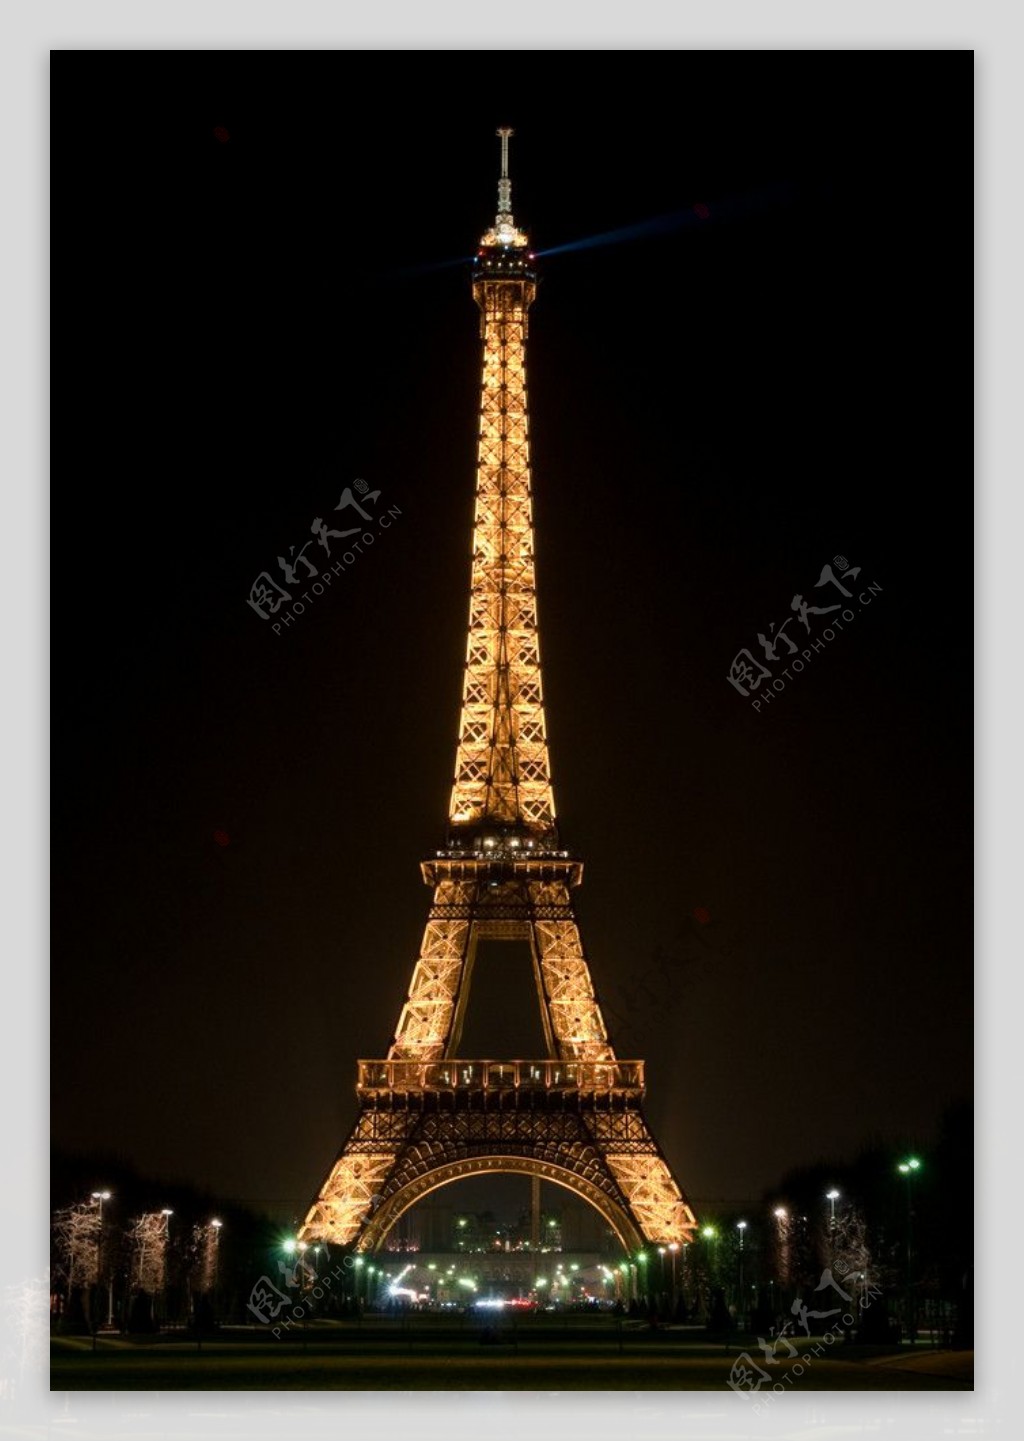 巴黎铁塔夜景图片